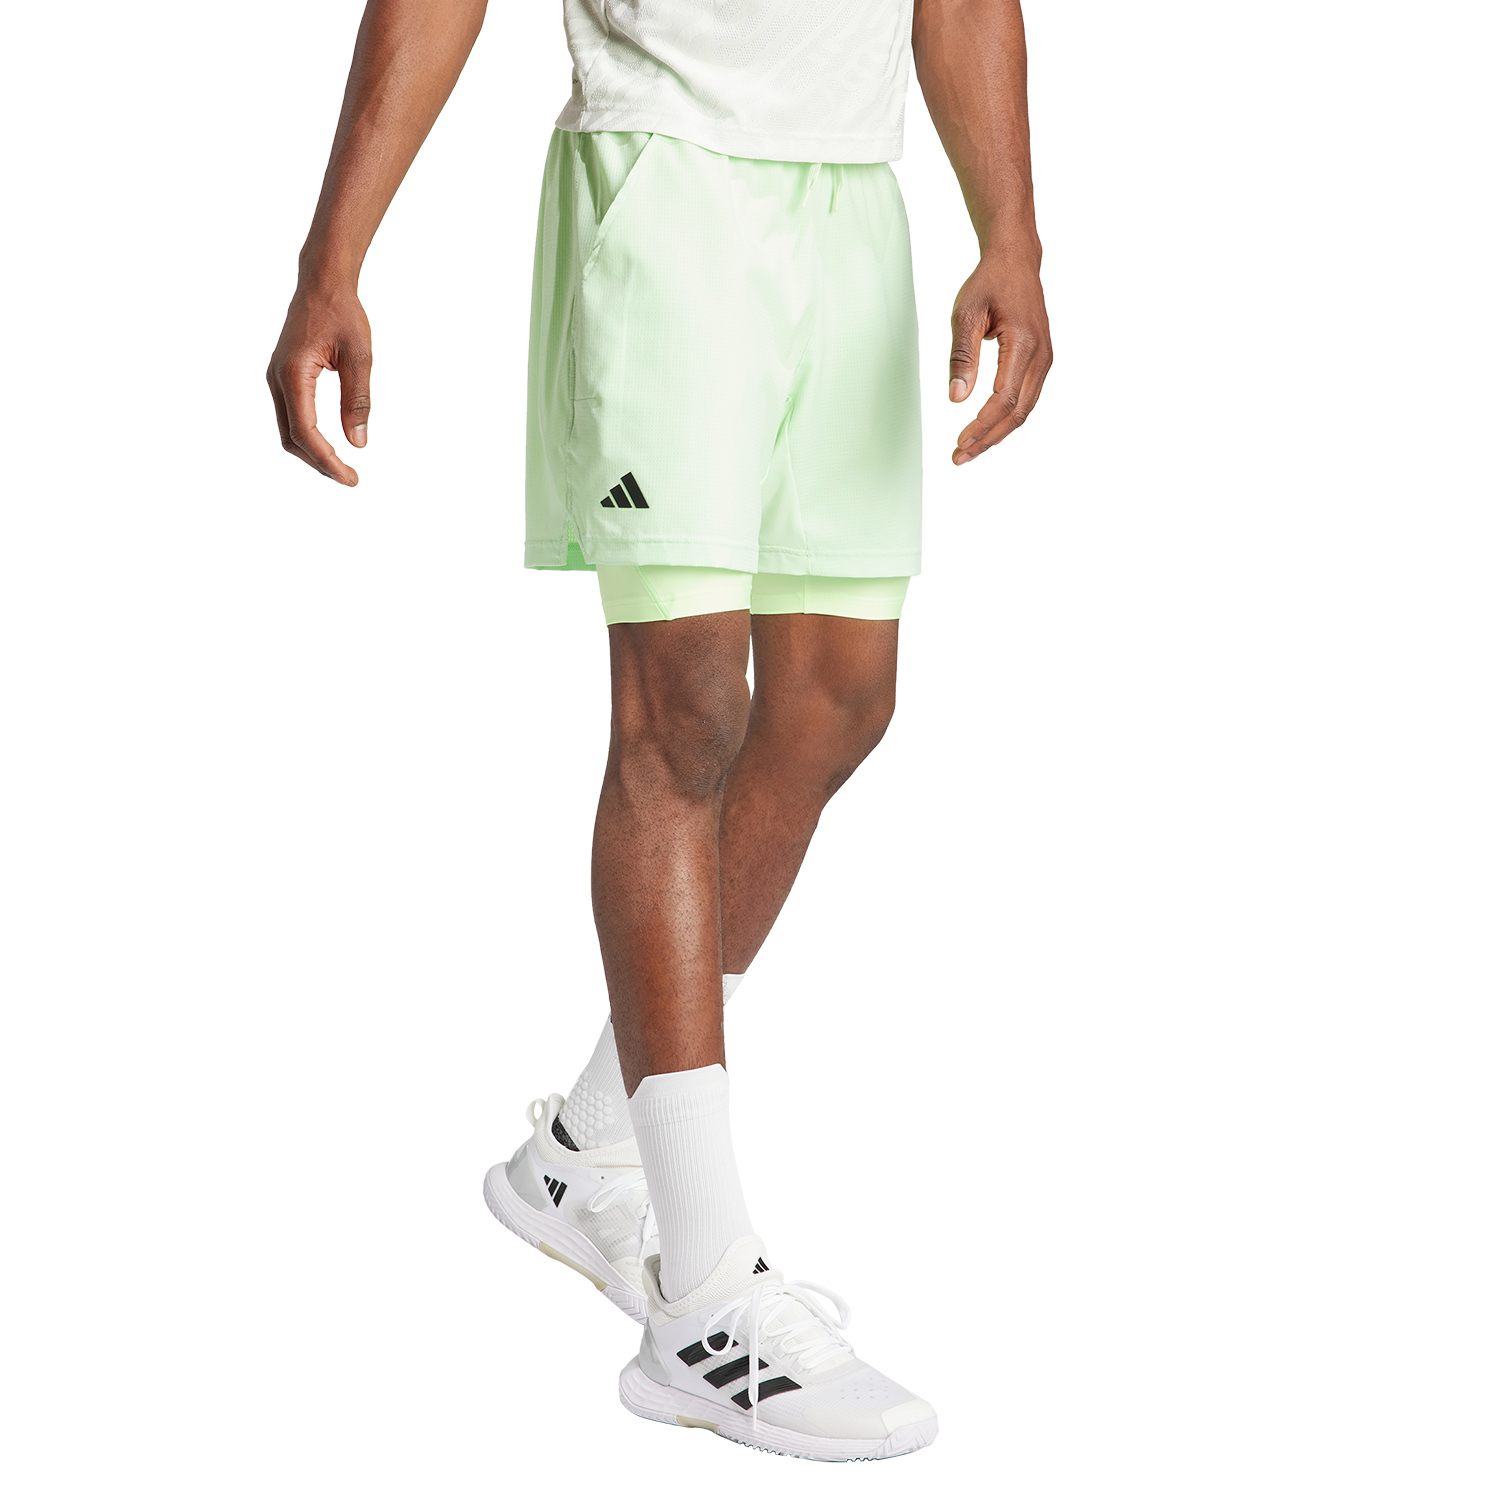 adidas HEAT.RDY 2 in 1 7in Pantaloncini - Semi Green Spark